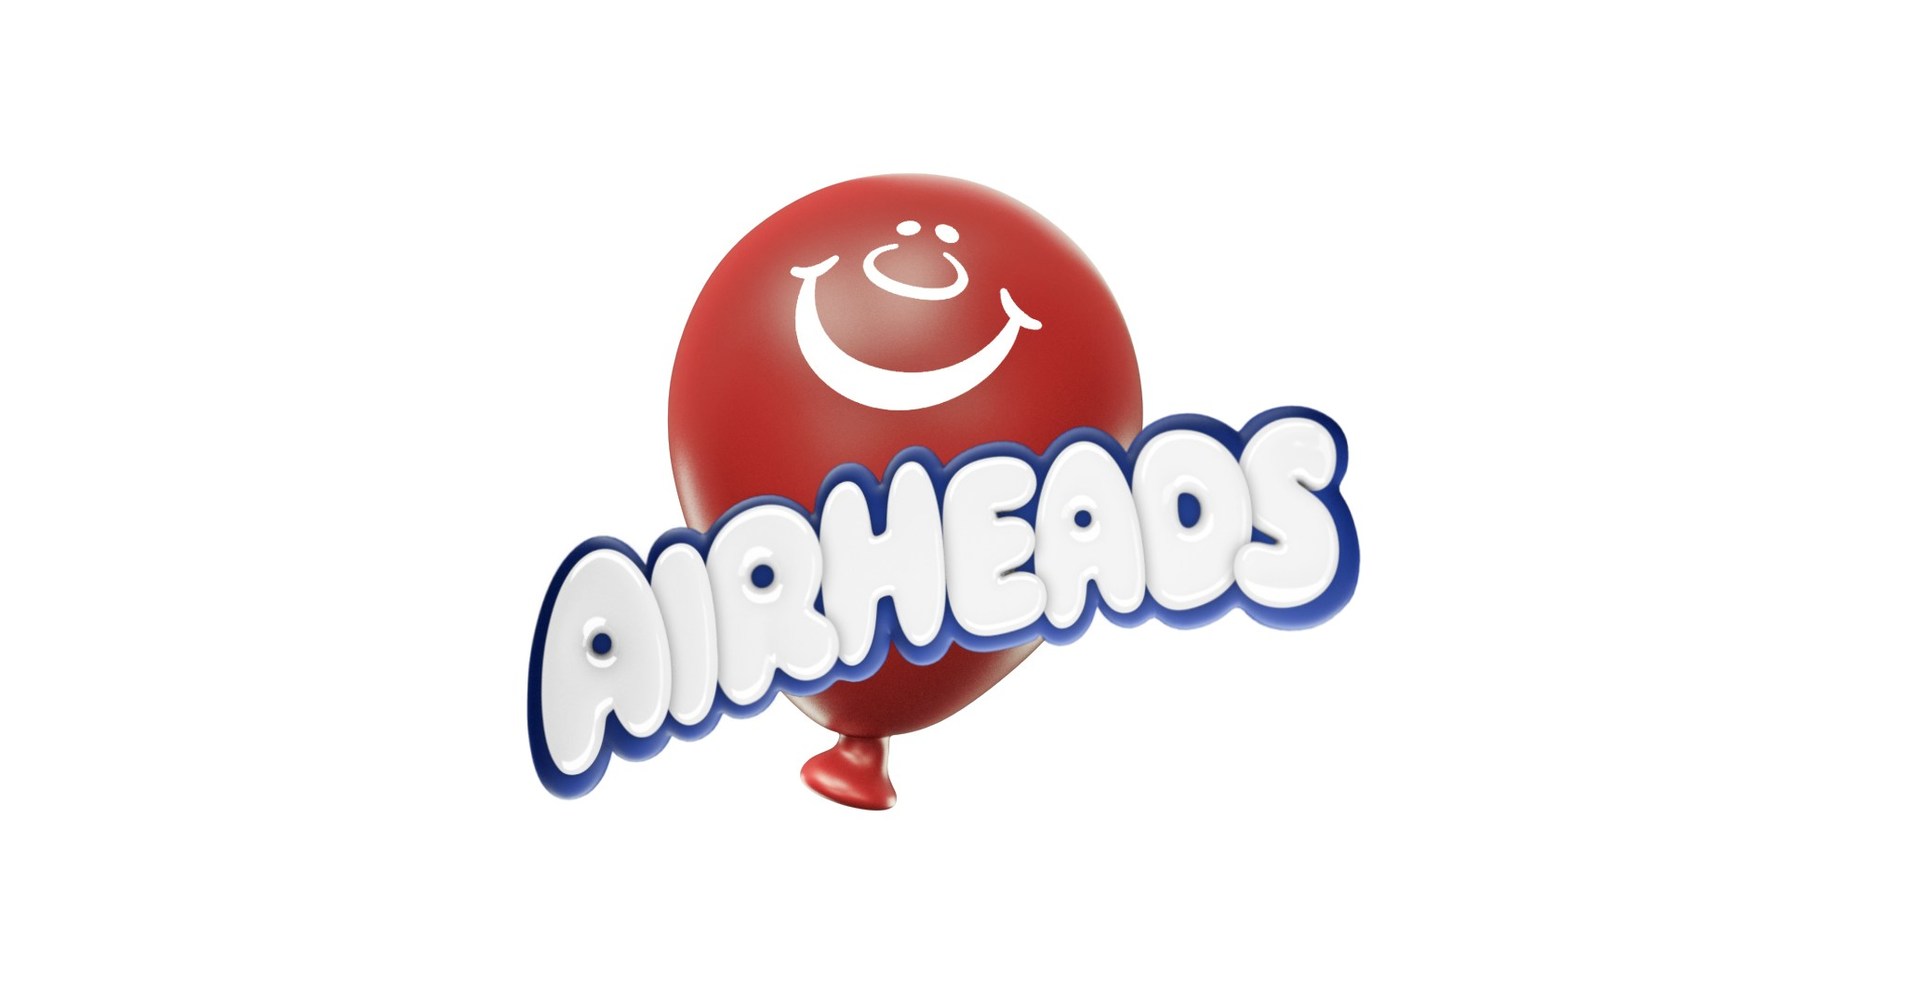 airheads logo